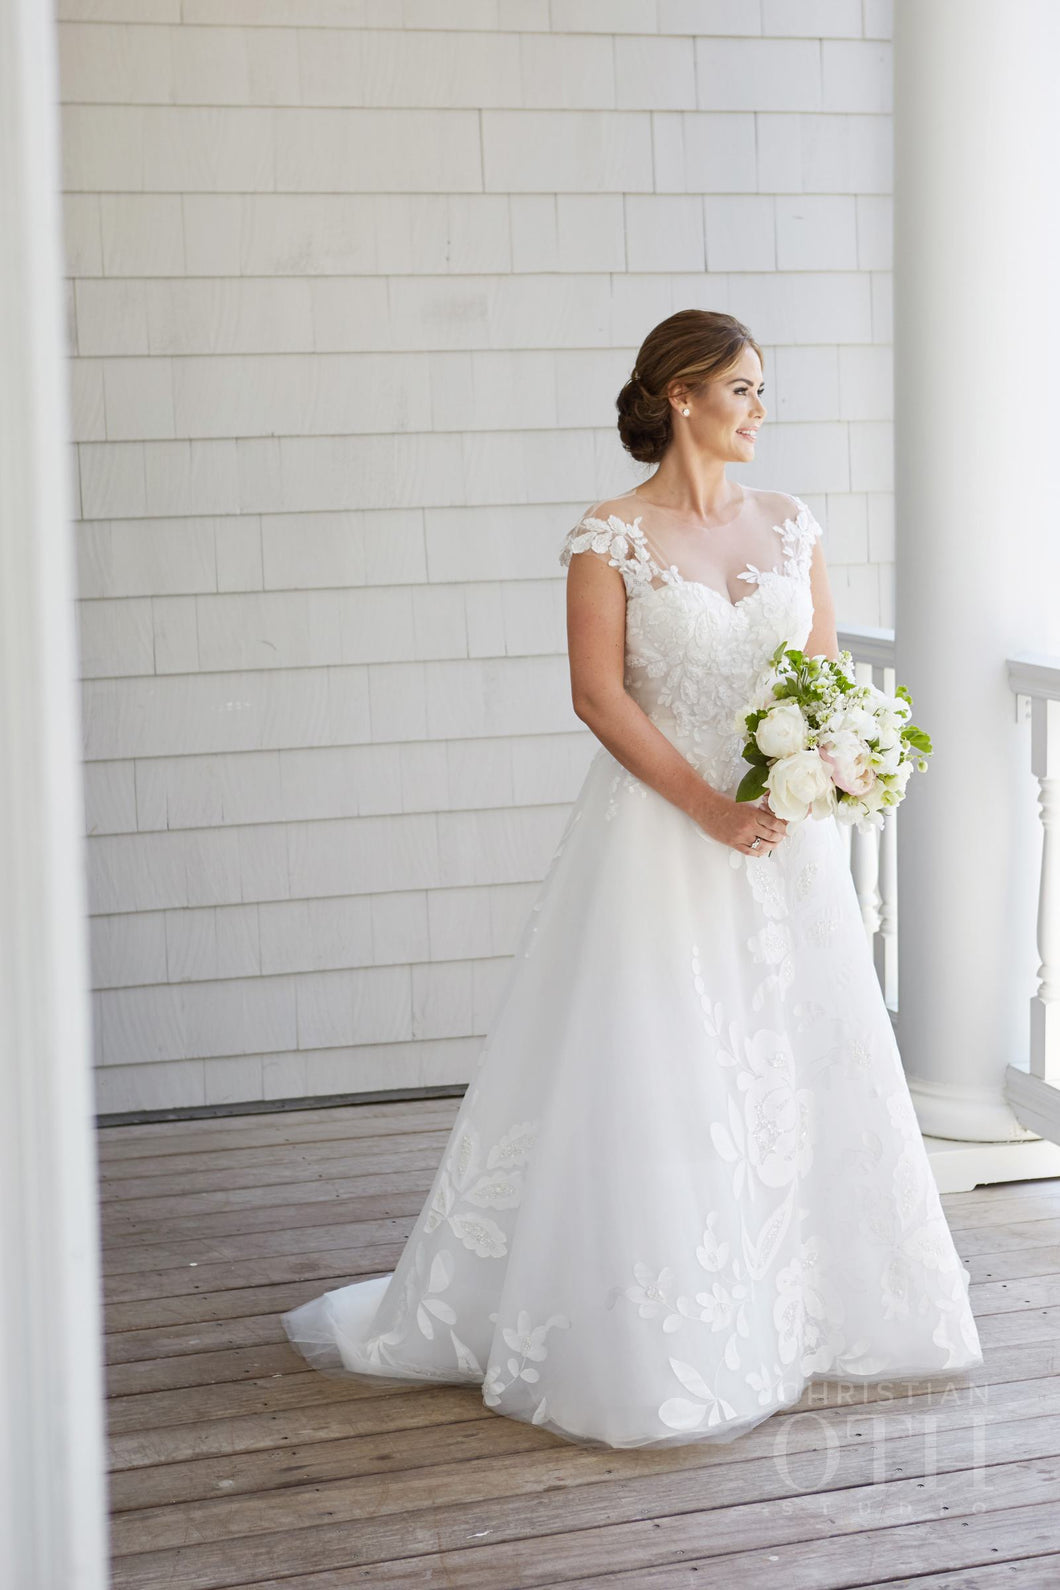 Oscar de la Renta 'Dena' size 10 used wedding dress front view on bride